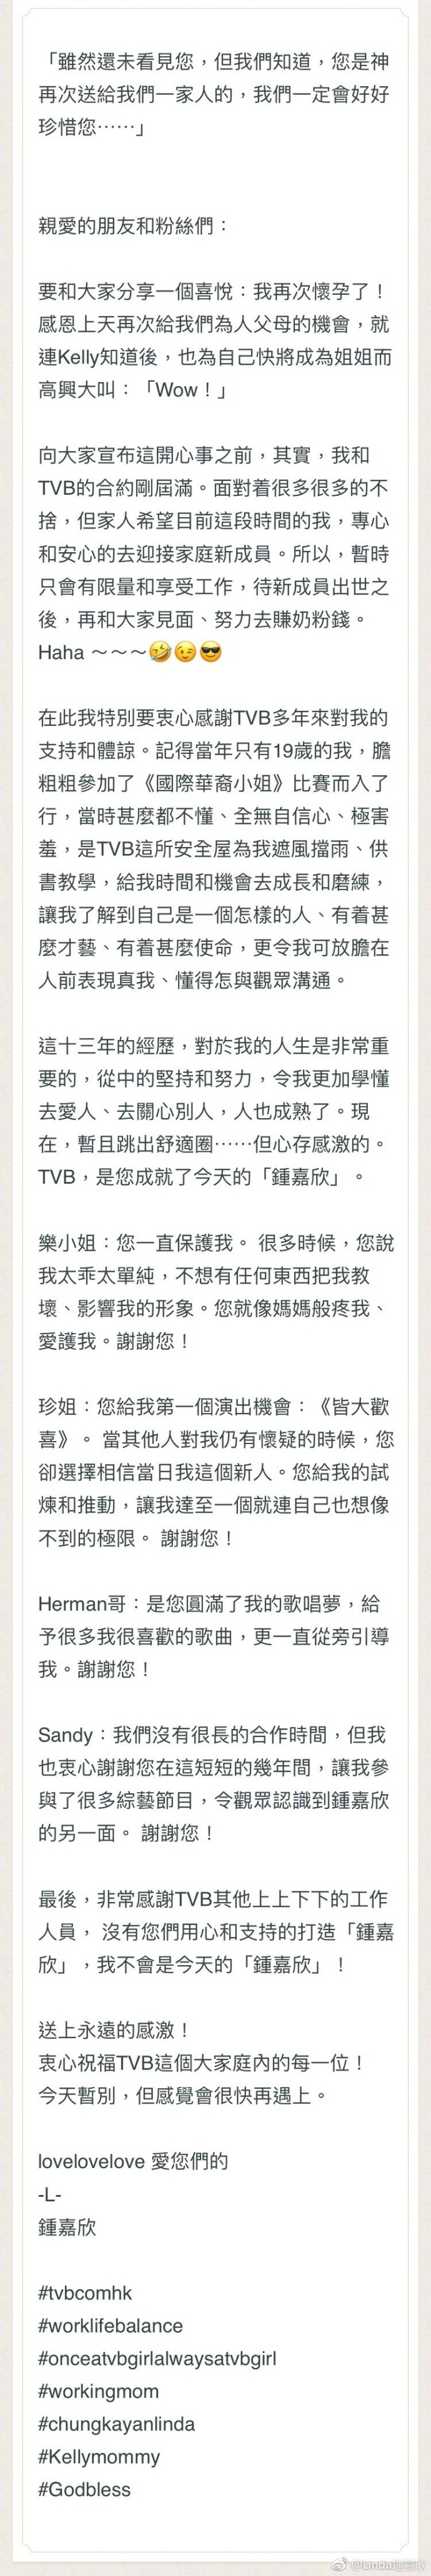 钟嘉欣发长文宣布二胎和与TVB合约期满